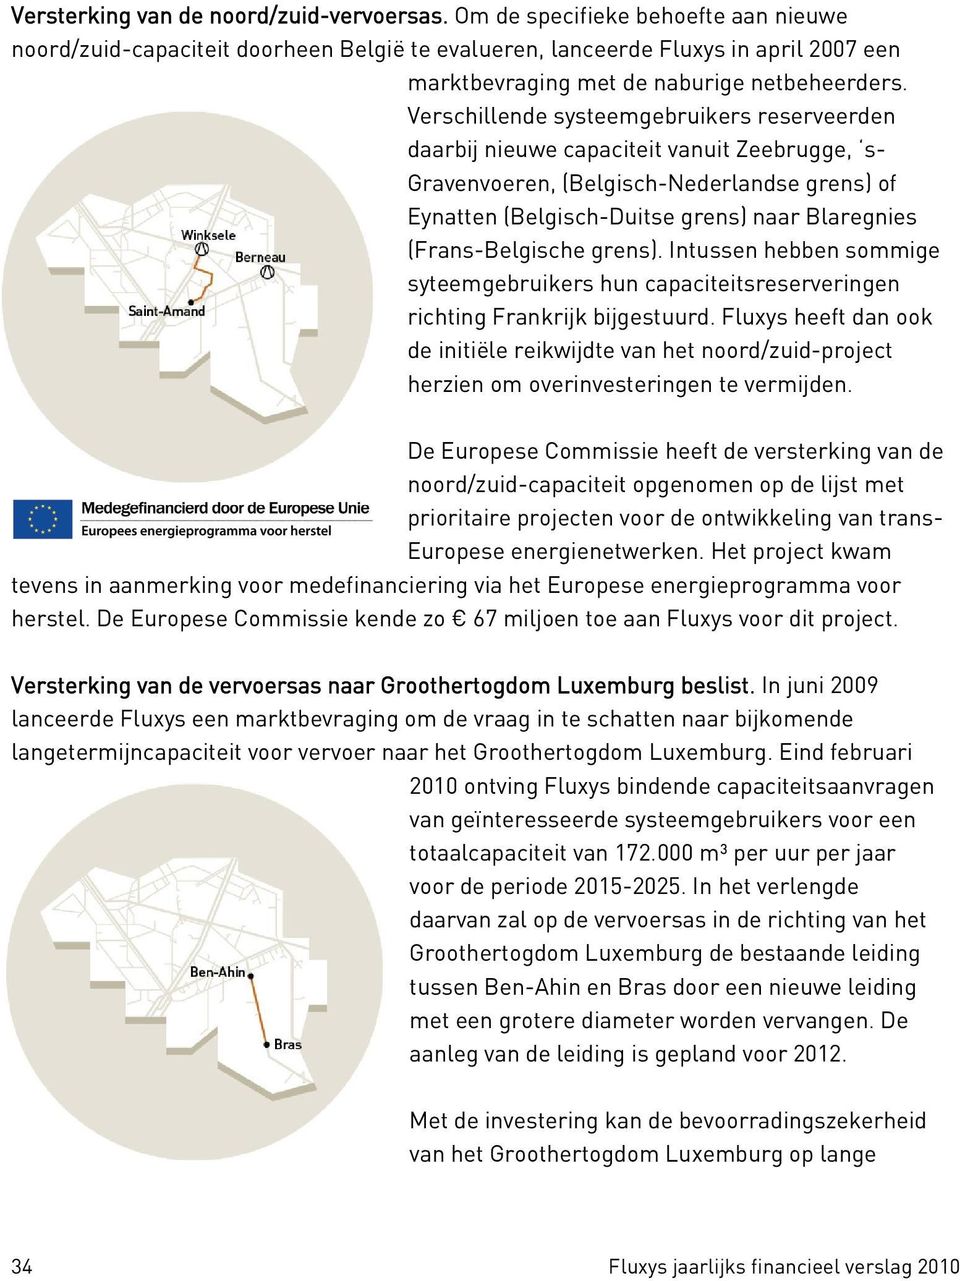 Verschillende systeemgebruikers reserveerden daarbij nieuwe capaciteit vanuit Zeebrugge, s- Gravenvoeren, (Belgisch-Nederlandse grens) of Eynatten (Belgisch-Duitse grens) naar Blaregnies